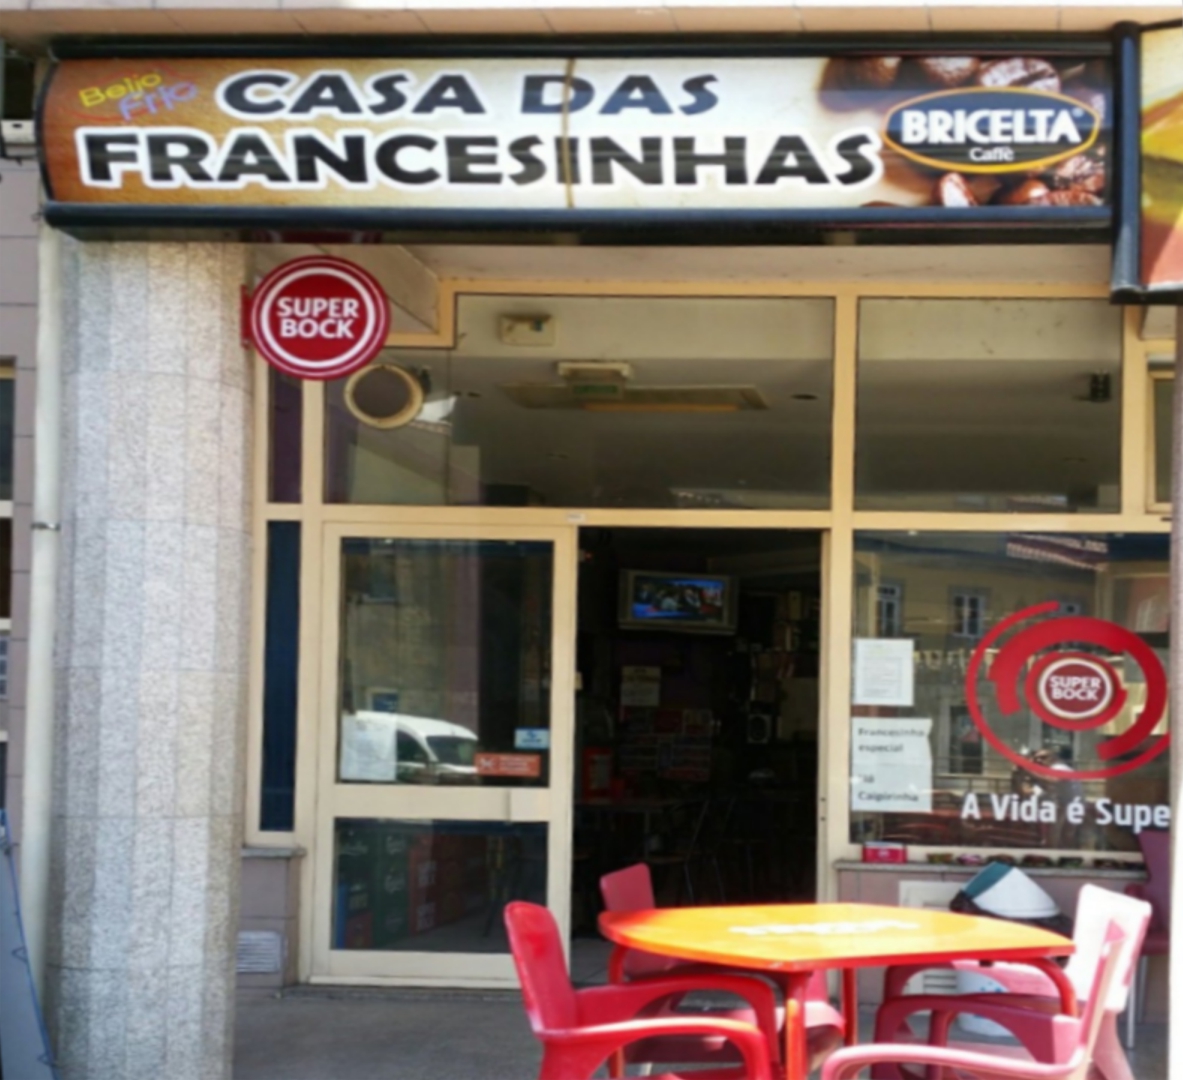 CASA DAS FRANCESINHAS